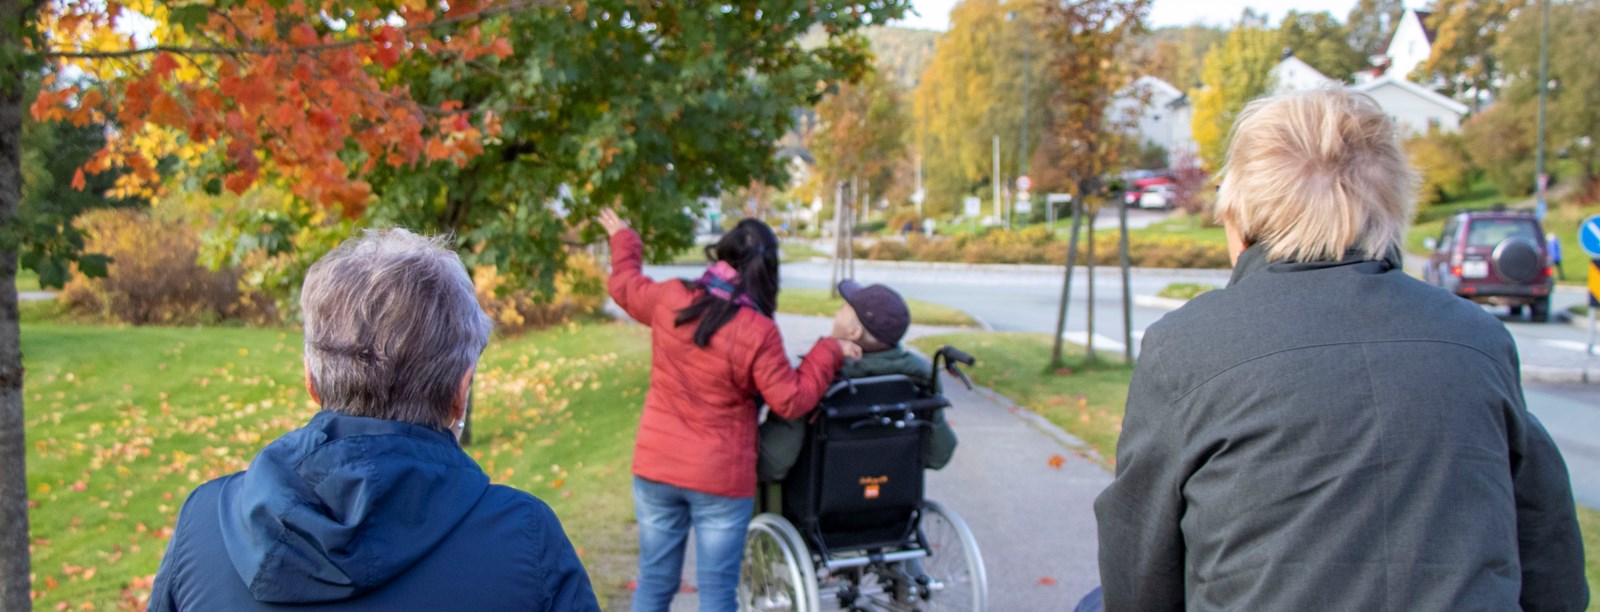 besøksvenner triller eldre som sitter i rullestol ut i naturen